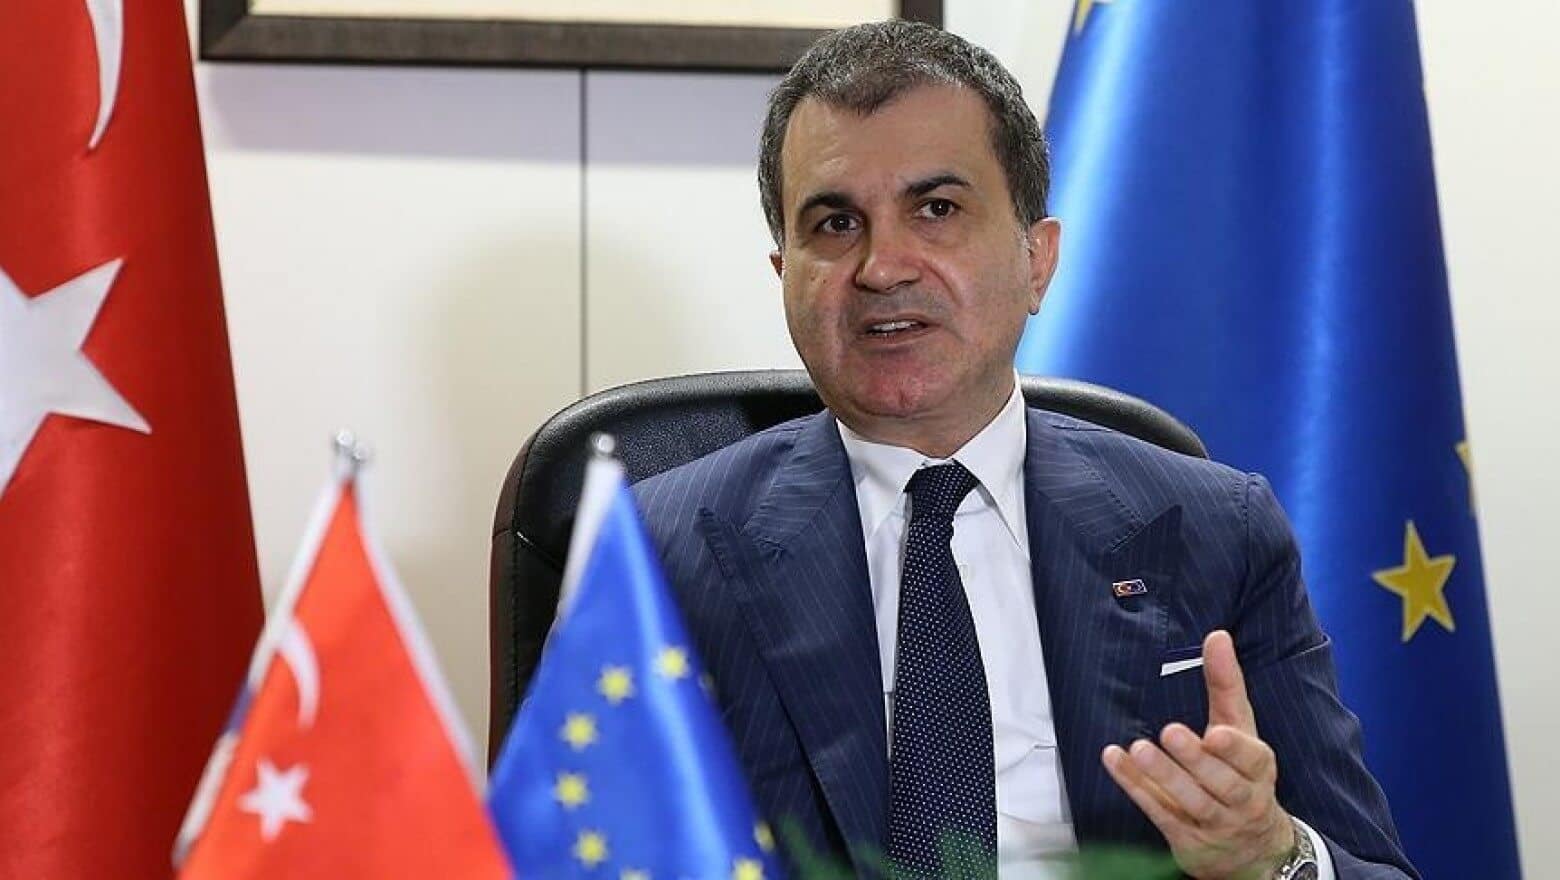 Παραλήρημα Τούρκου υπουργού κατά Π. Καμμένου: «Αλαζόνας πολιτικός κωμικός που φέρει τον τίτλο “Έλληνας υπουργός Άμυνας”»